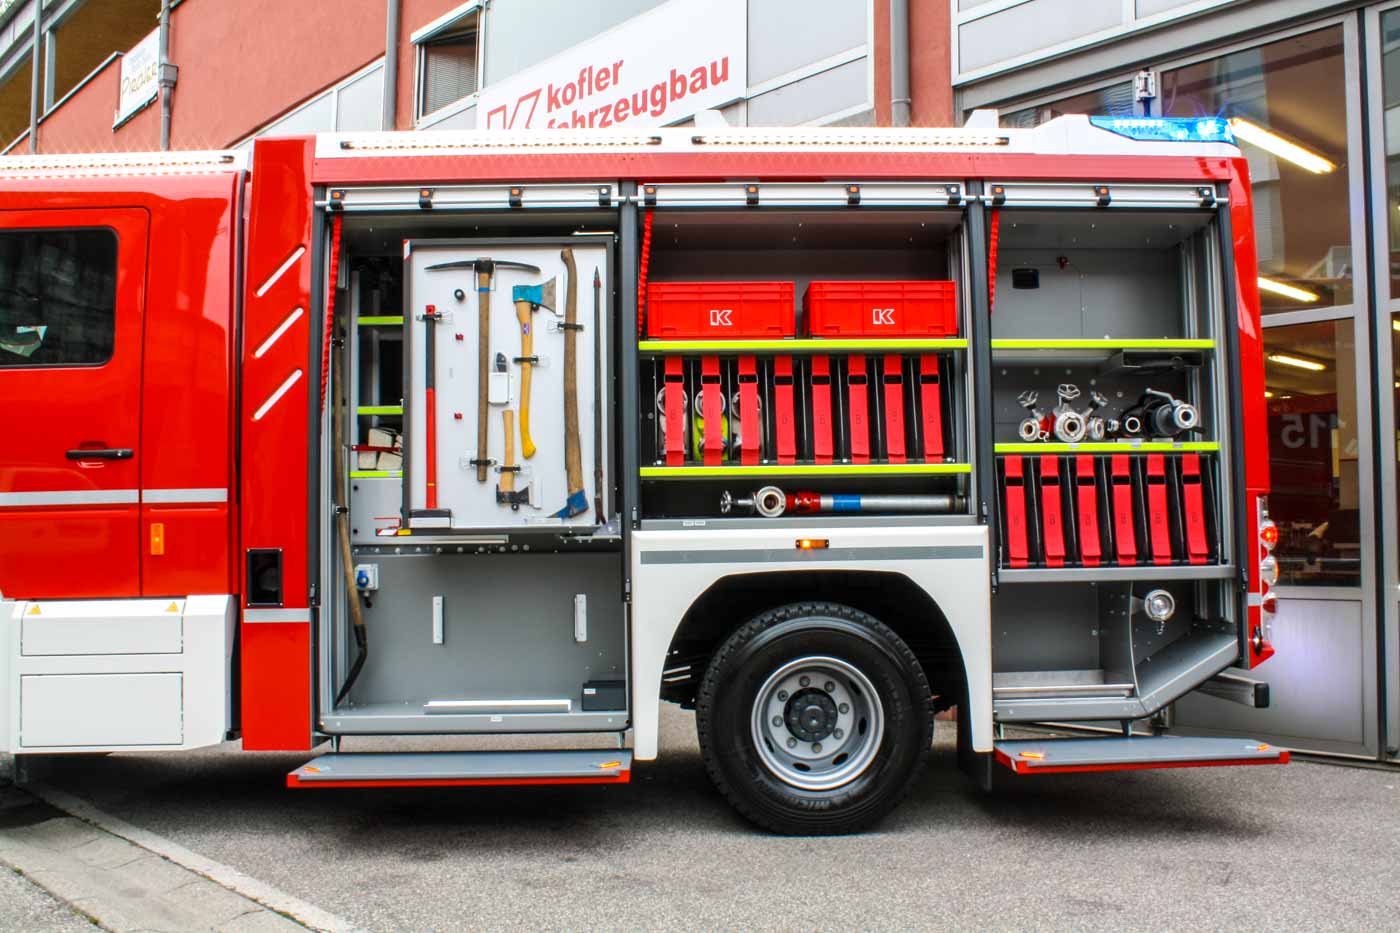 FF-Oberau-Haslach-Kofler-Fahrzeugbau